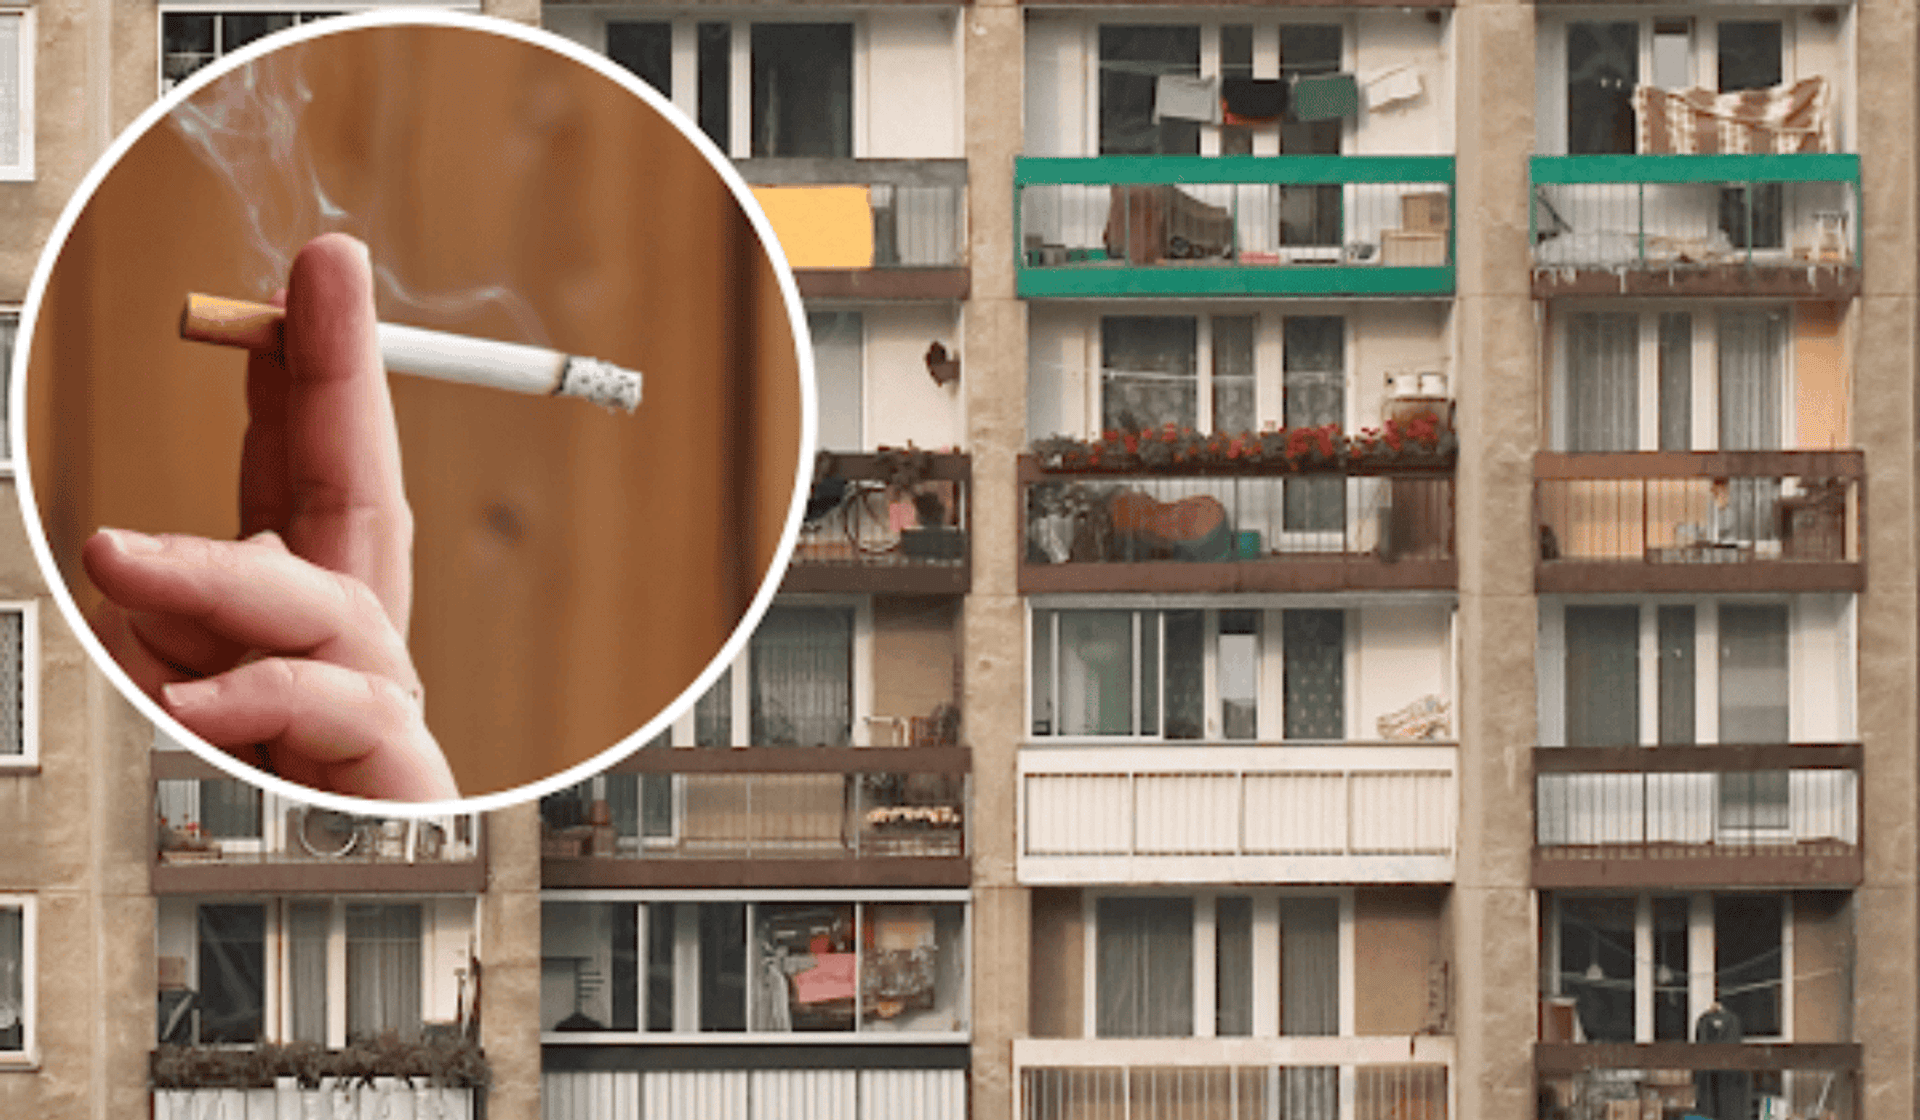 Palenie na balkonie jest nielegalne! Zobacz, jak reagować na sąsiadów palaczy.